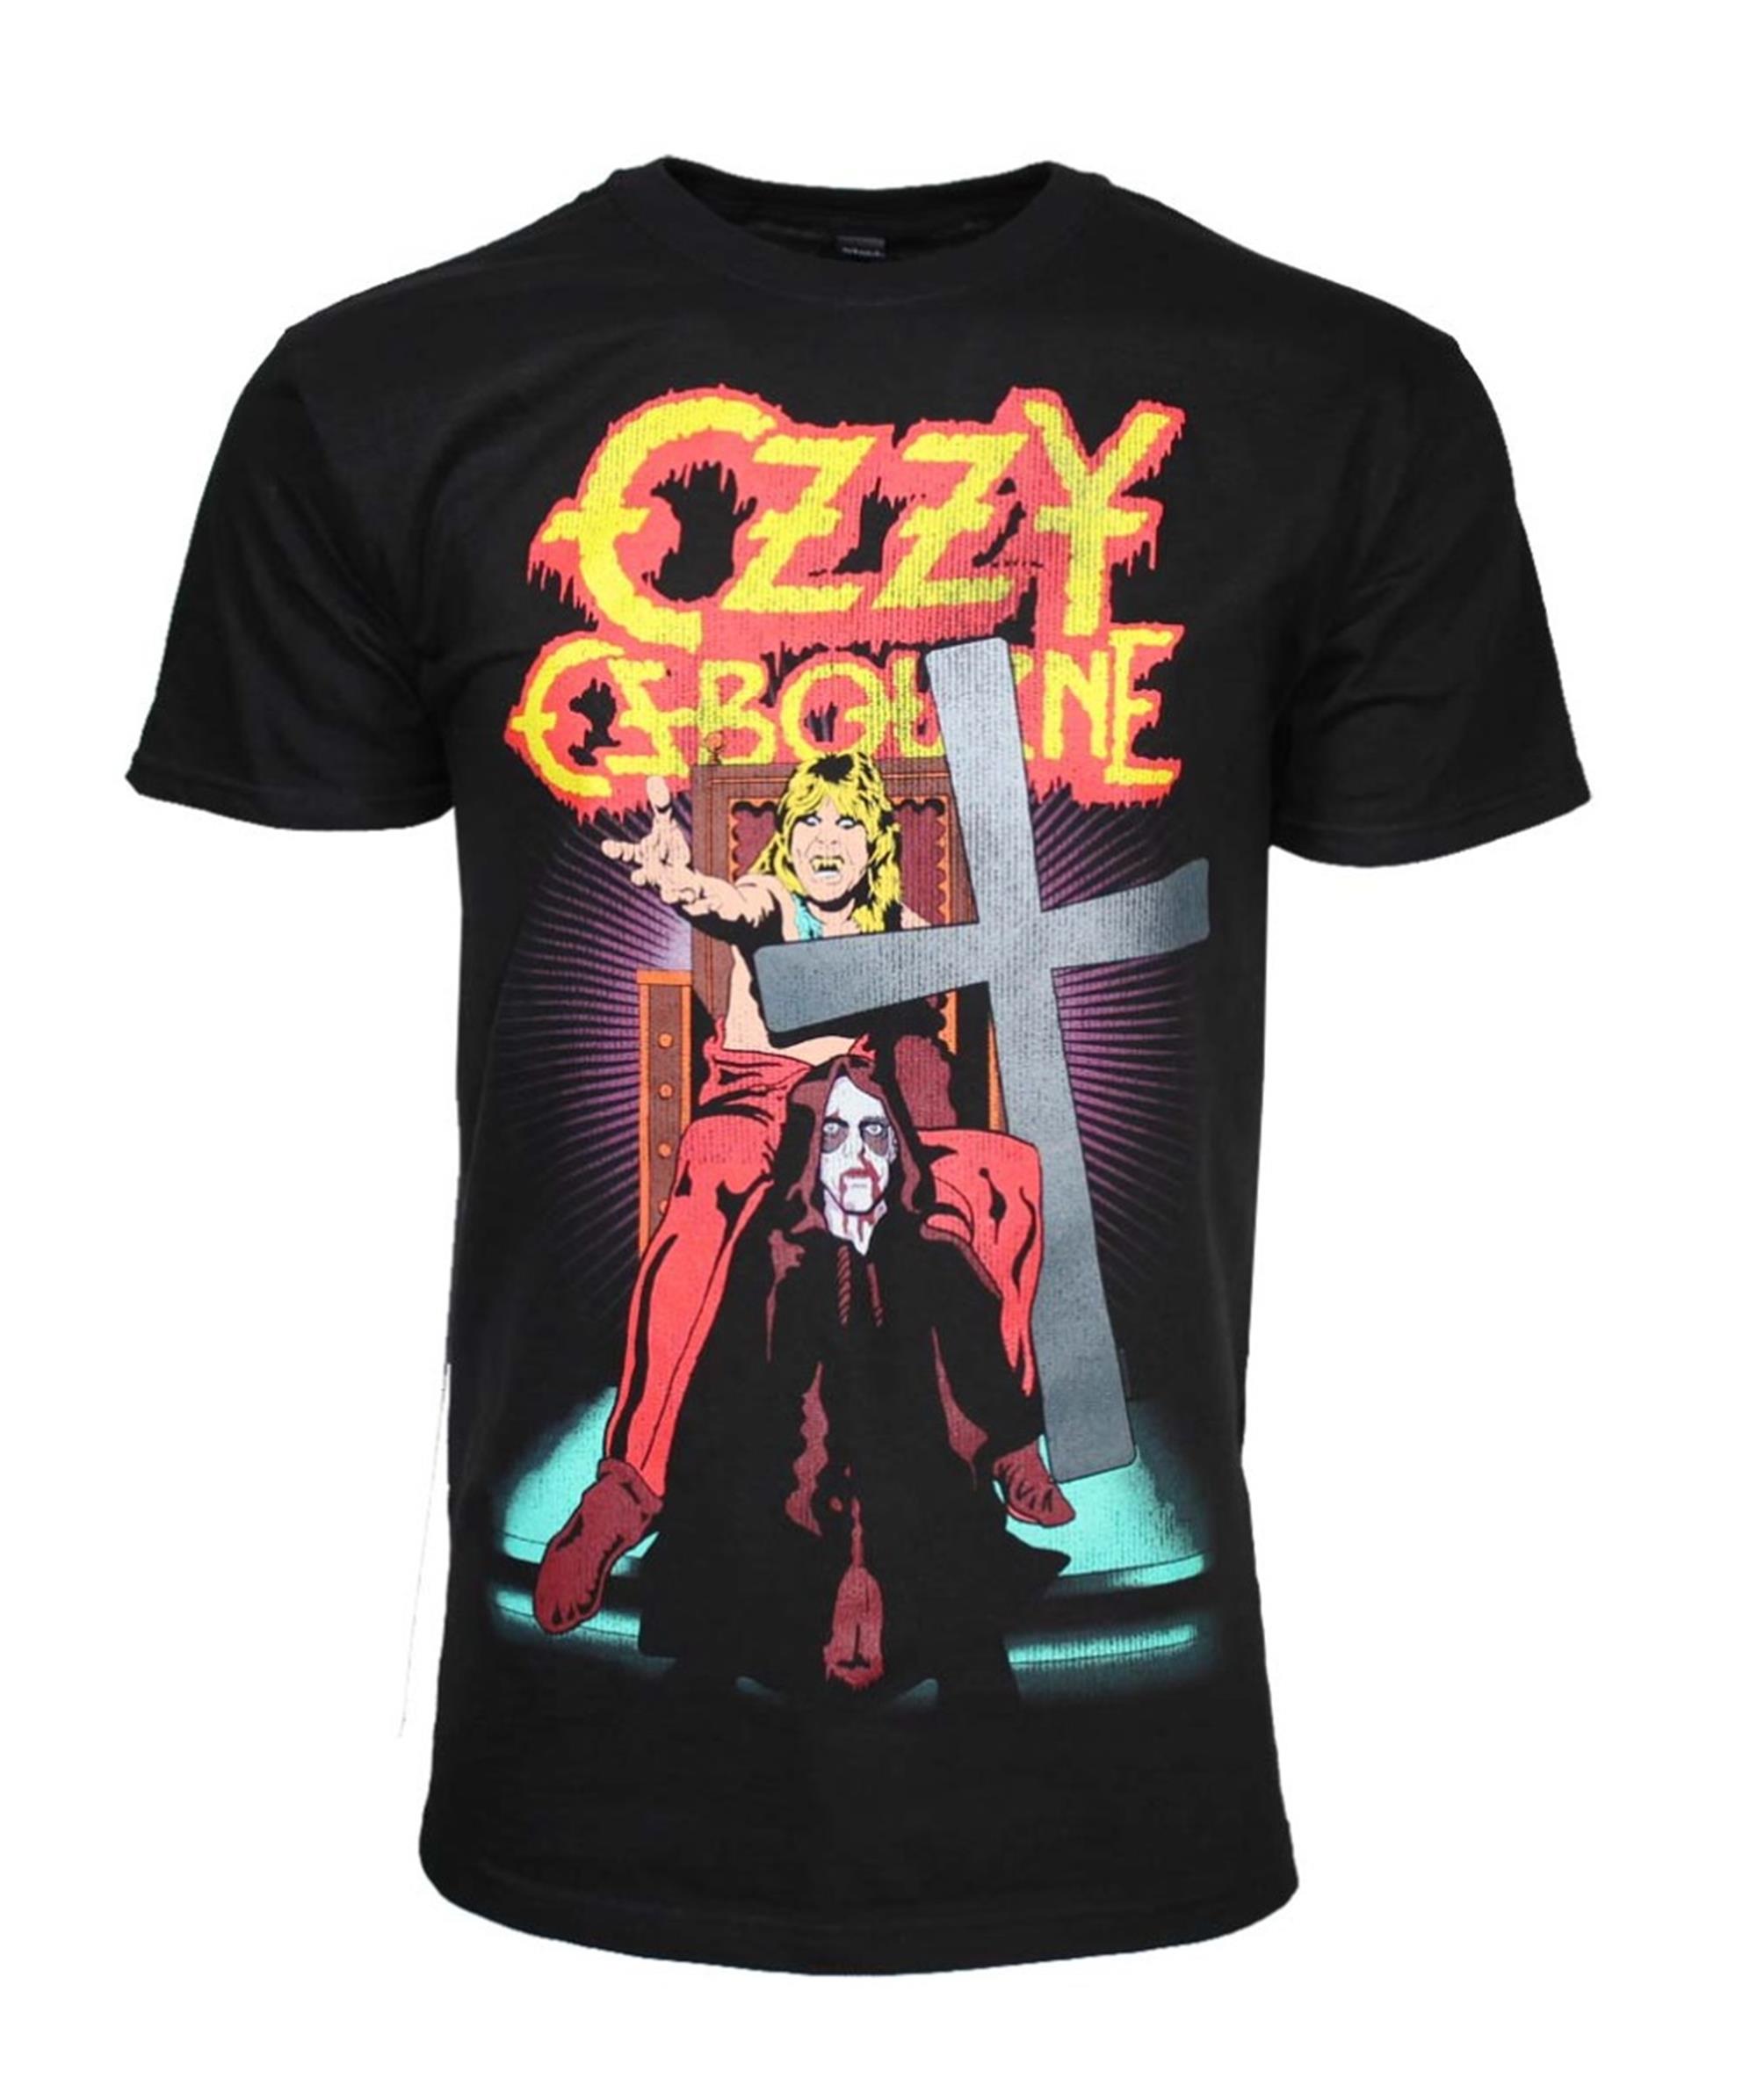 Ozzy Osbourne Speak of the Devil T-Shirt